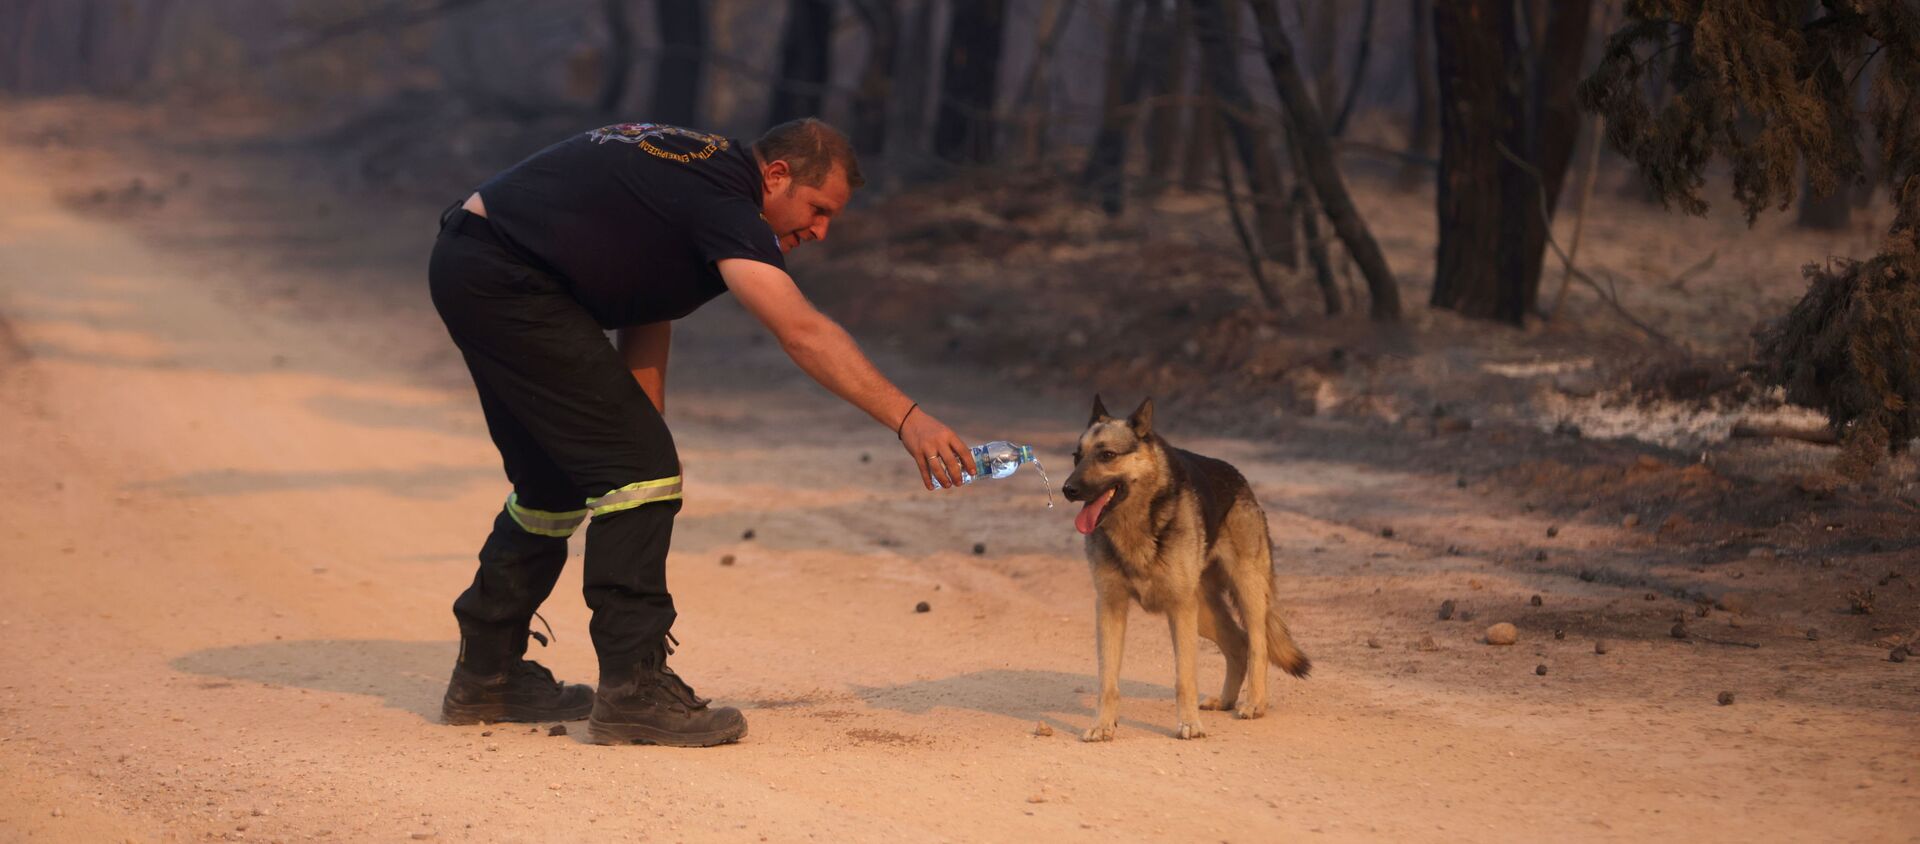 Người lính cứu hỏa đưa nước cho con chó trong trận cháy rừng ở ngoại ô phía bắc Athens - Sputnik Việt Nam, 1920, 04.08.2021